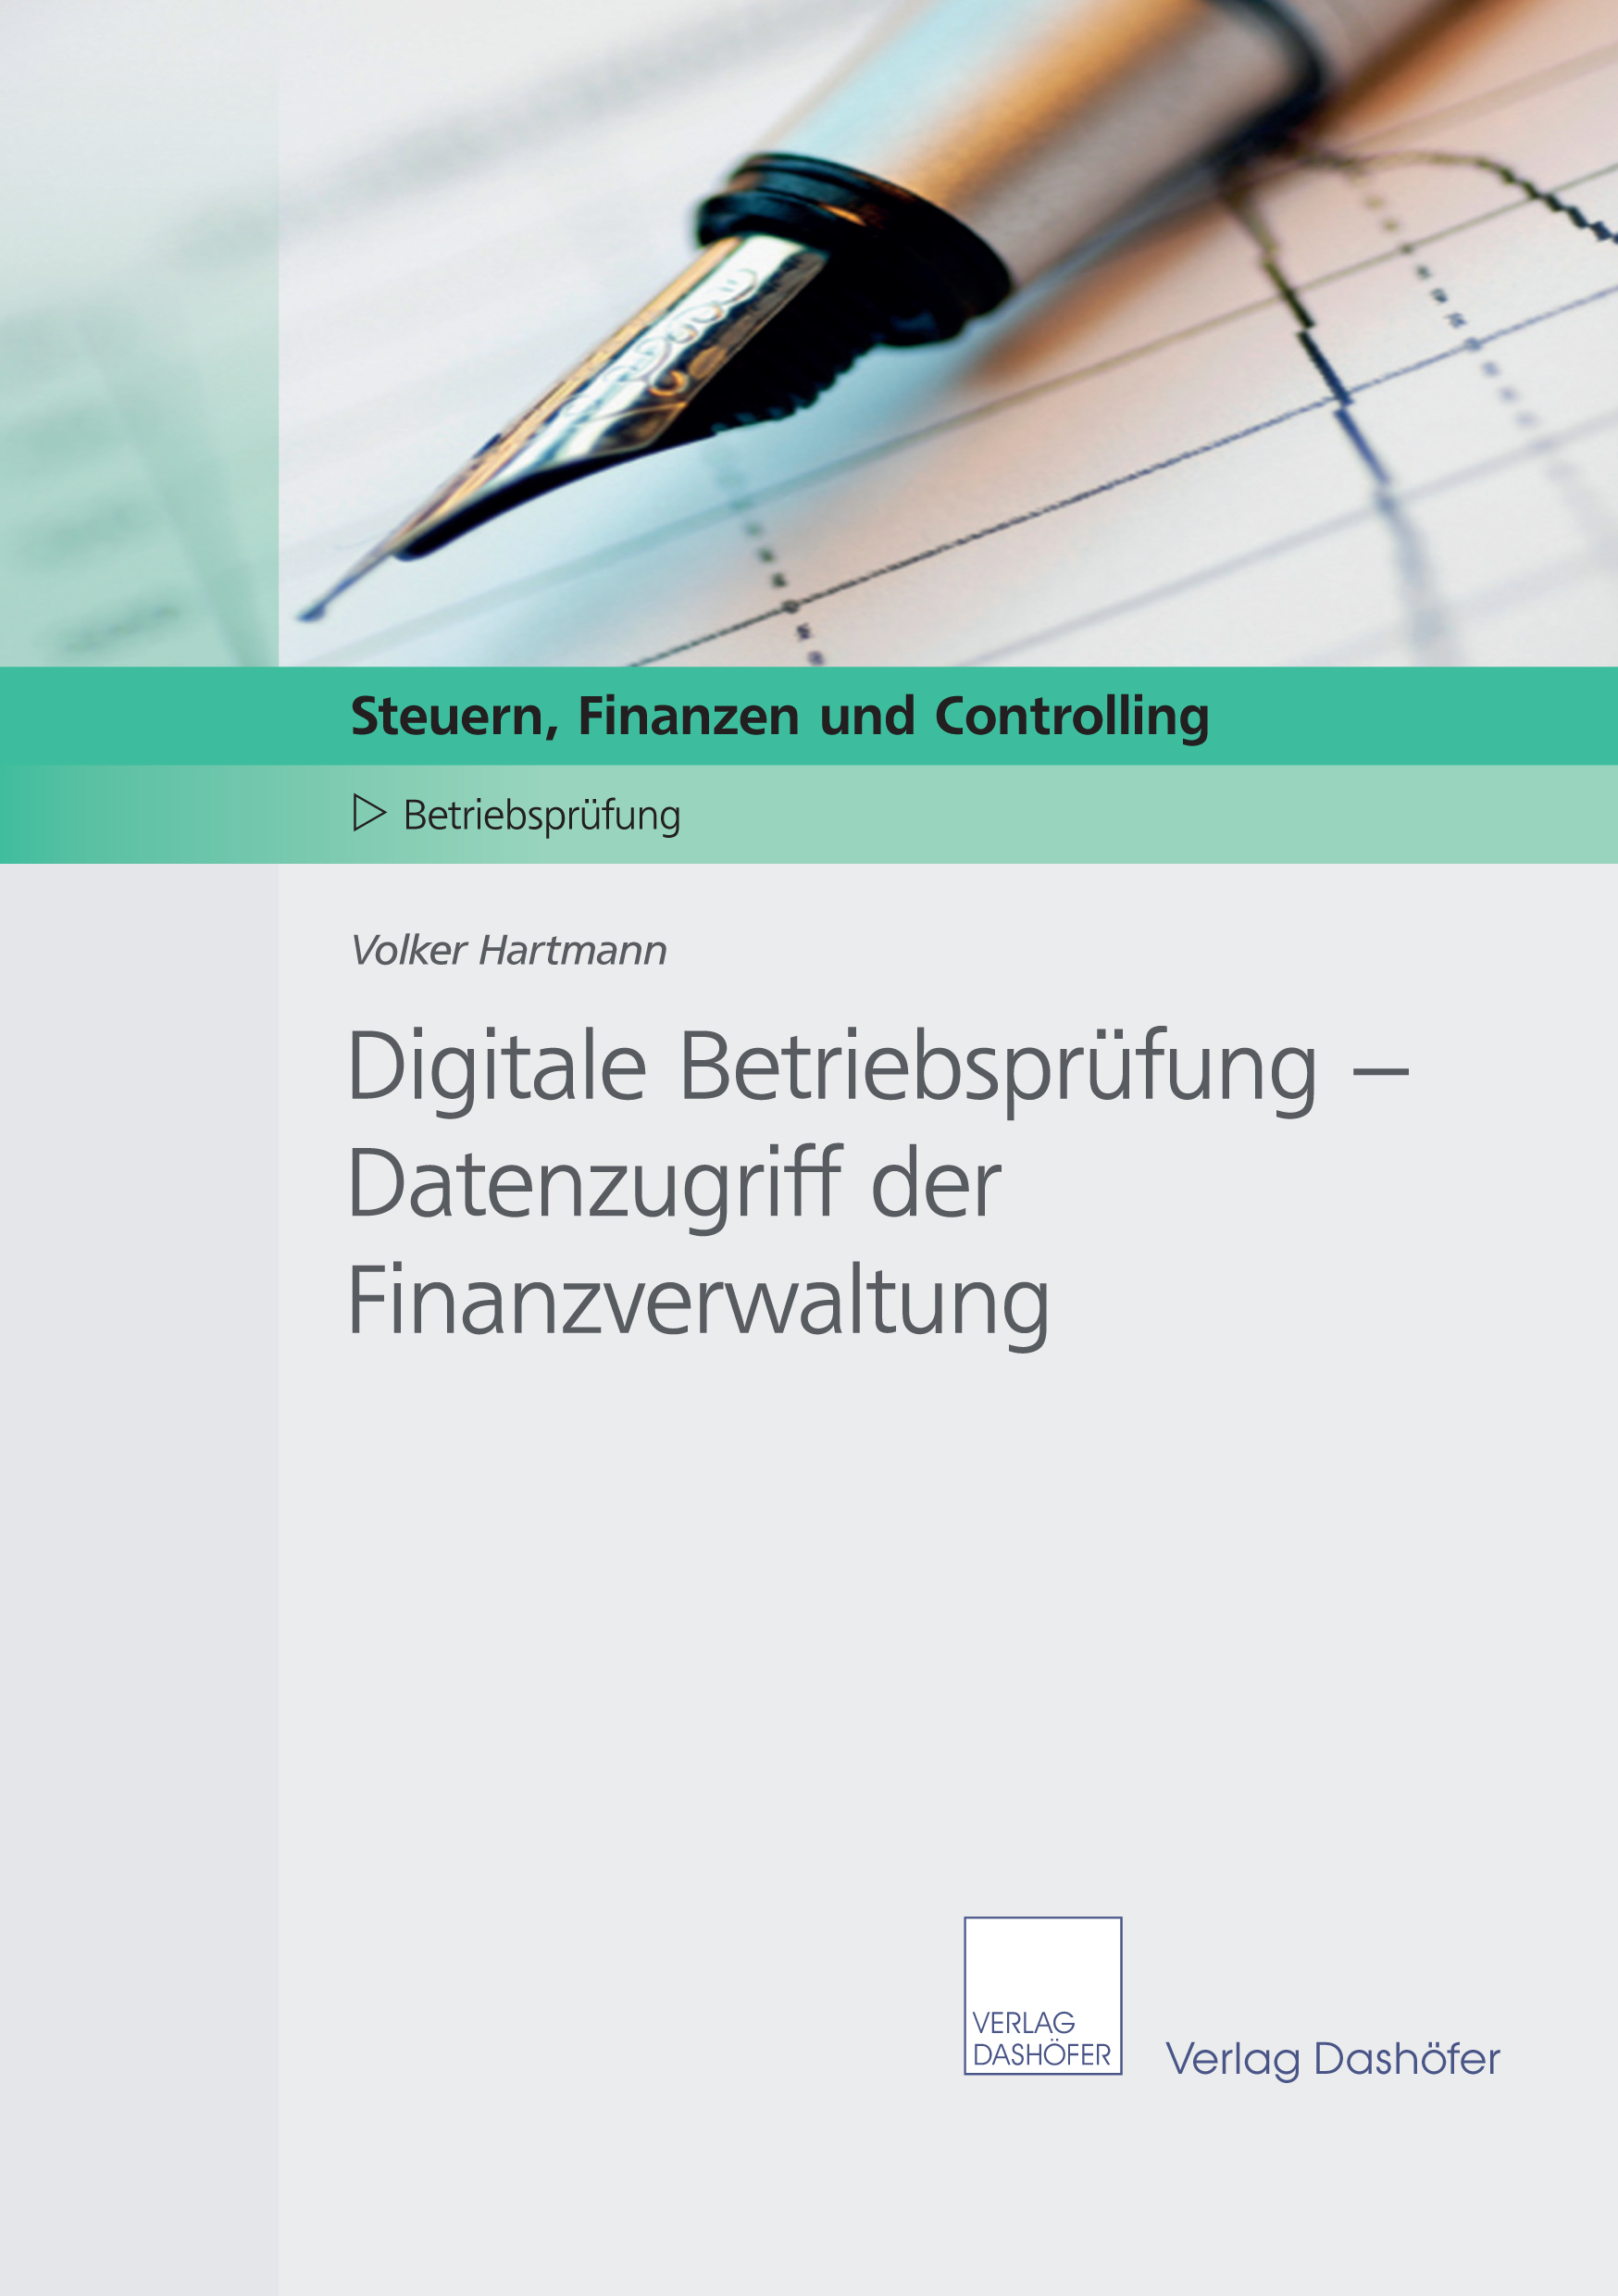 Digitale Betriebsprüfung: Datenzugriff der Finanzverwaltung